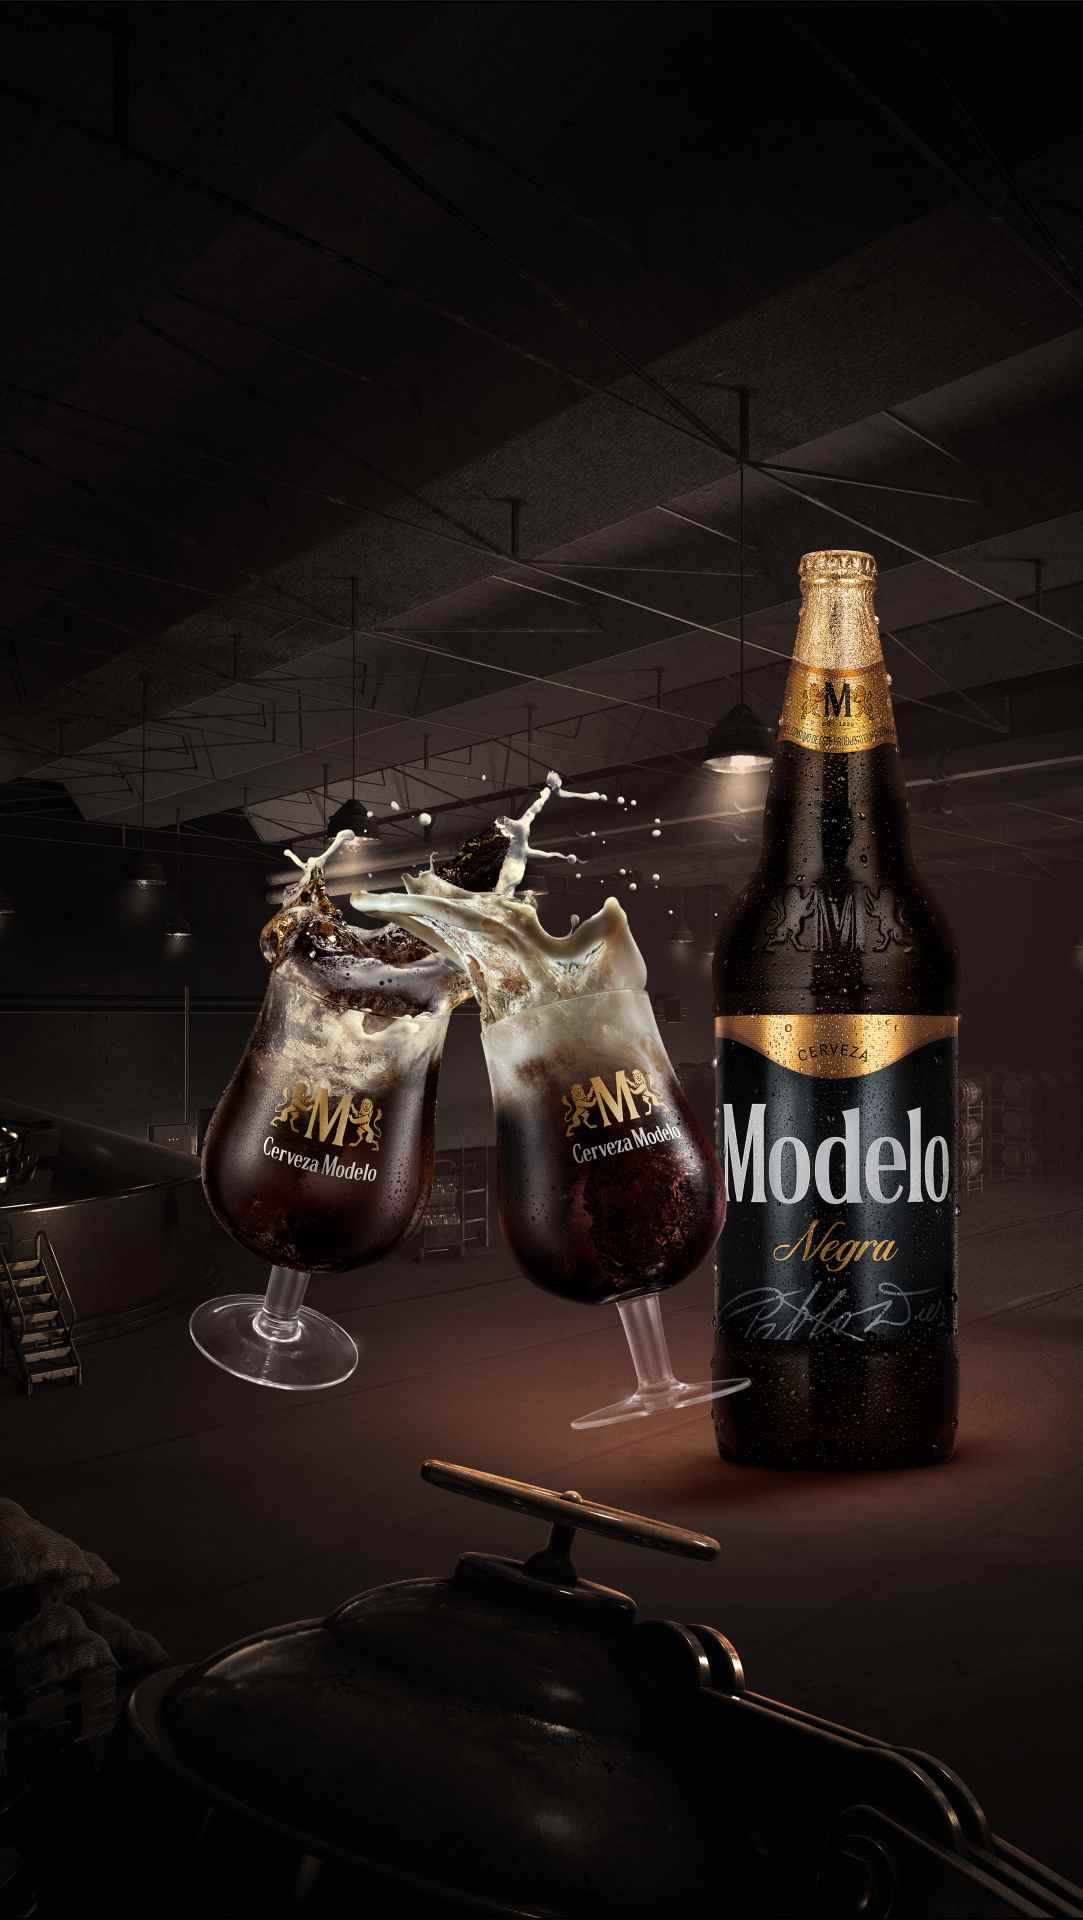 Cerveza Modelo y sus dos nuevas presentaciones - Gentleman MX